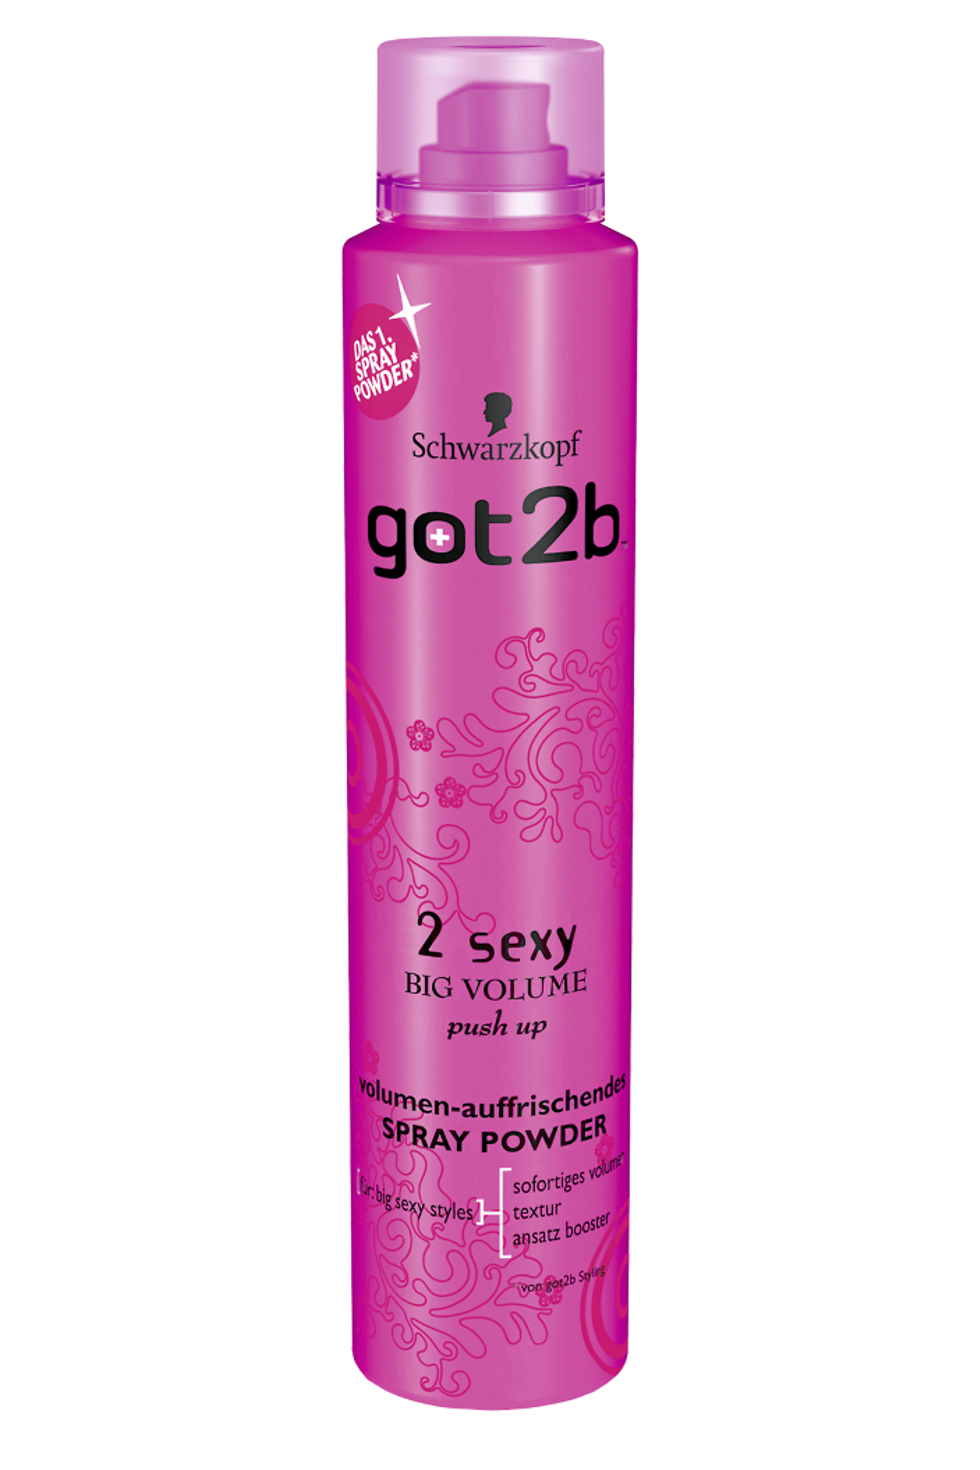 got2b 2sexy volumen-auffrischendes Spray Powder